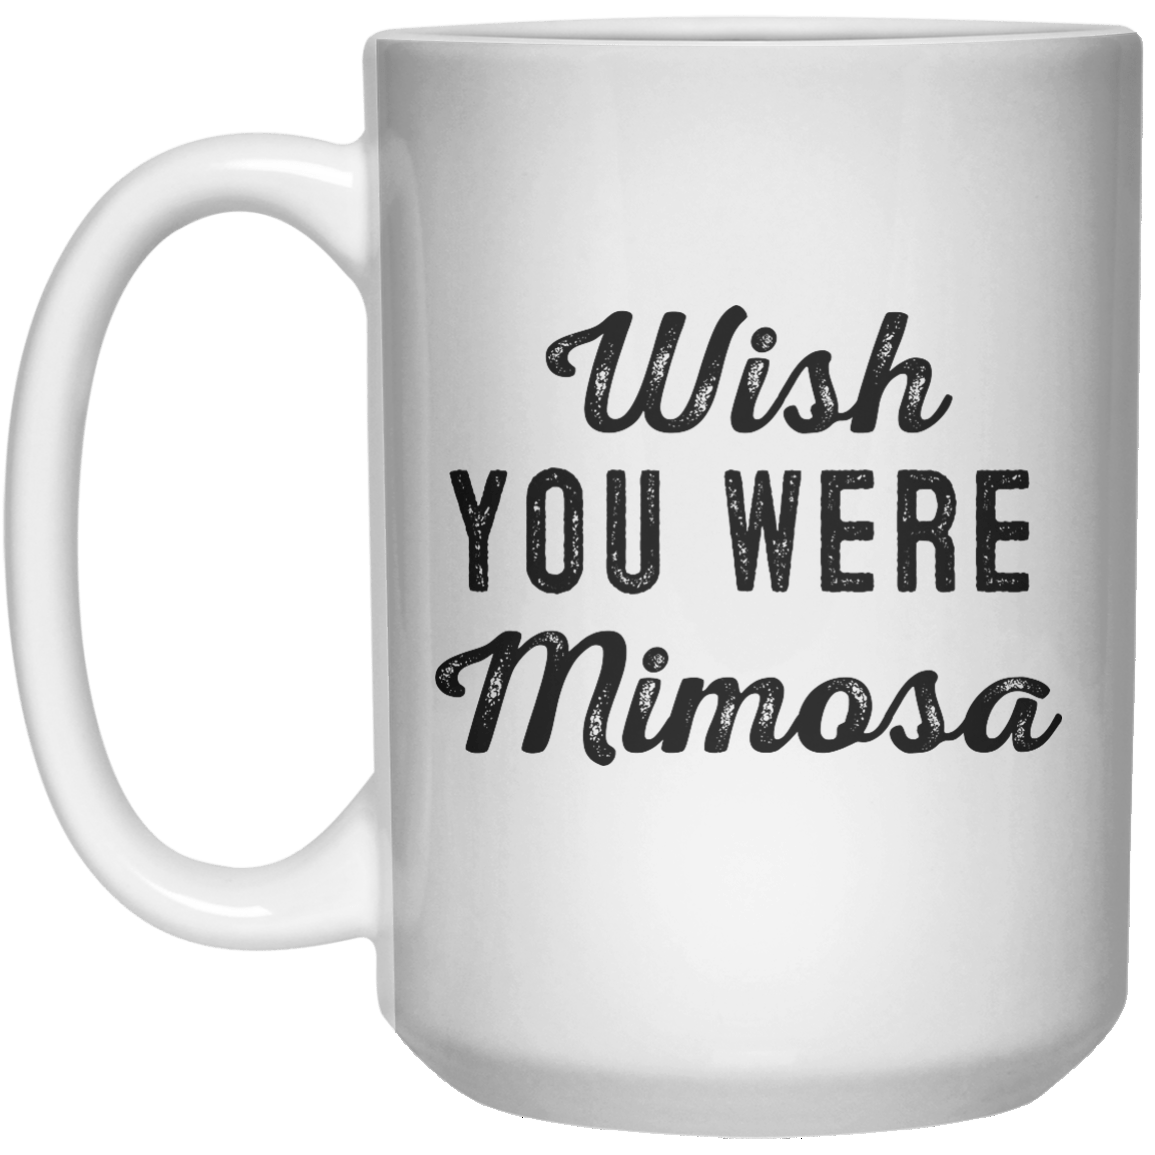 Wish You Were Mimosa MUG  Mug - 15oz 